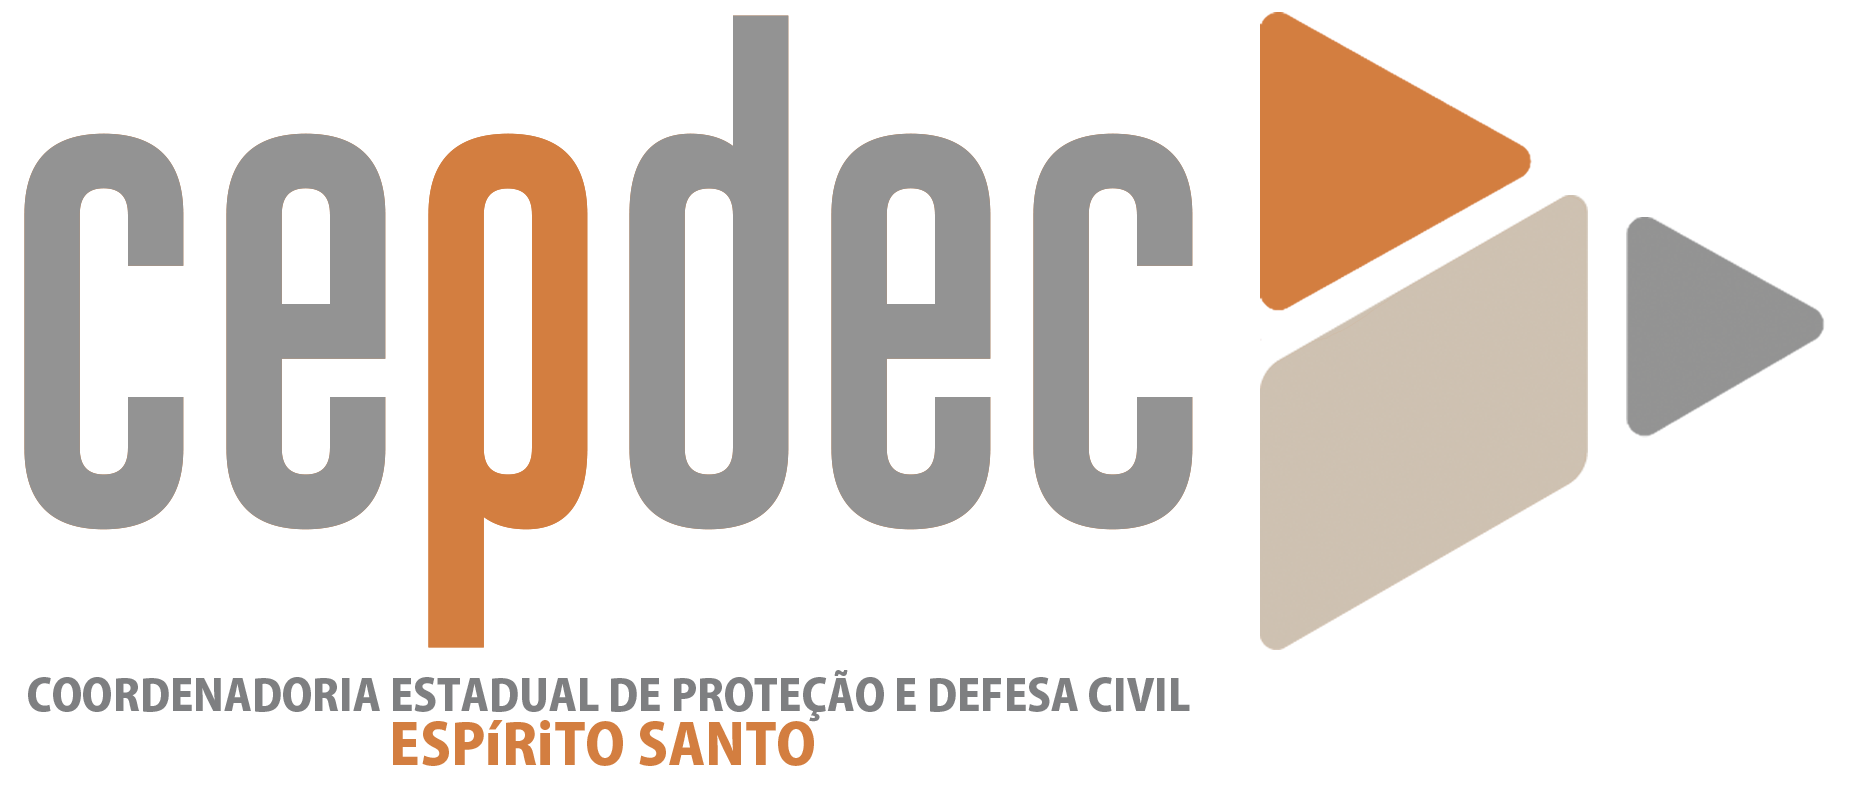 GLOSSÁRIO - Dicionário Defesa Civil - Coordenadoria Estadual de